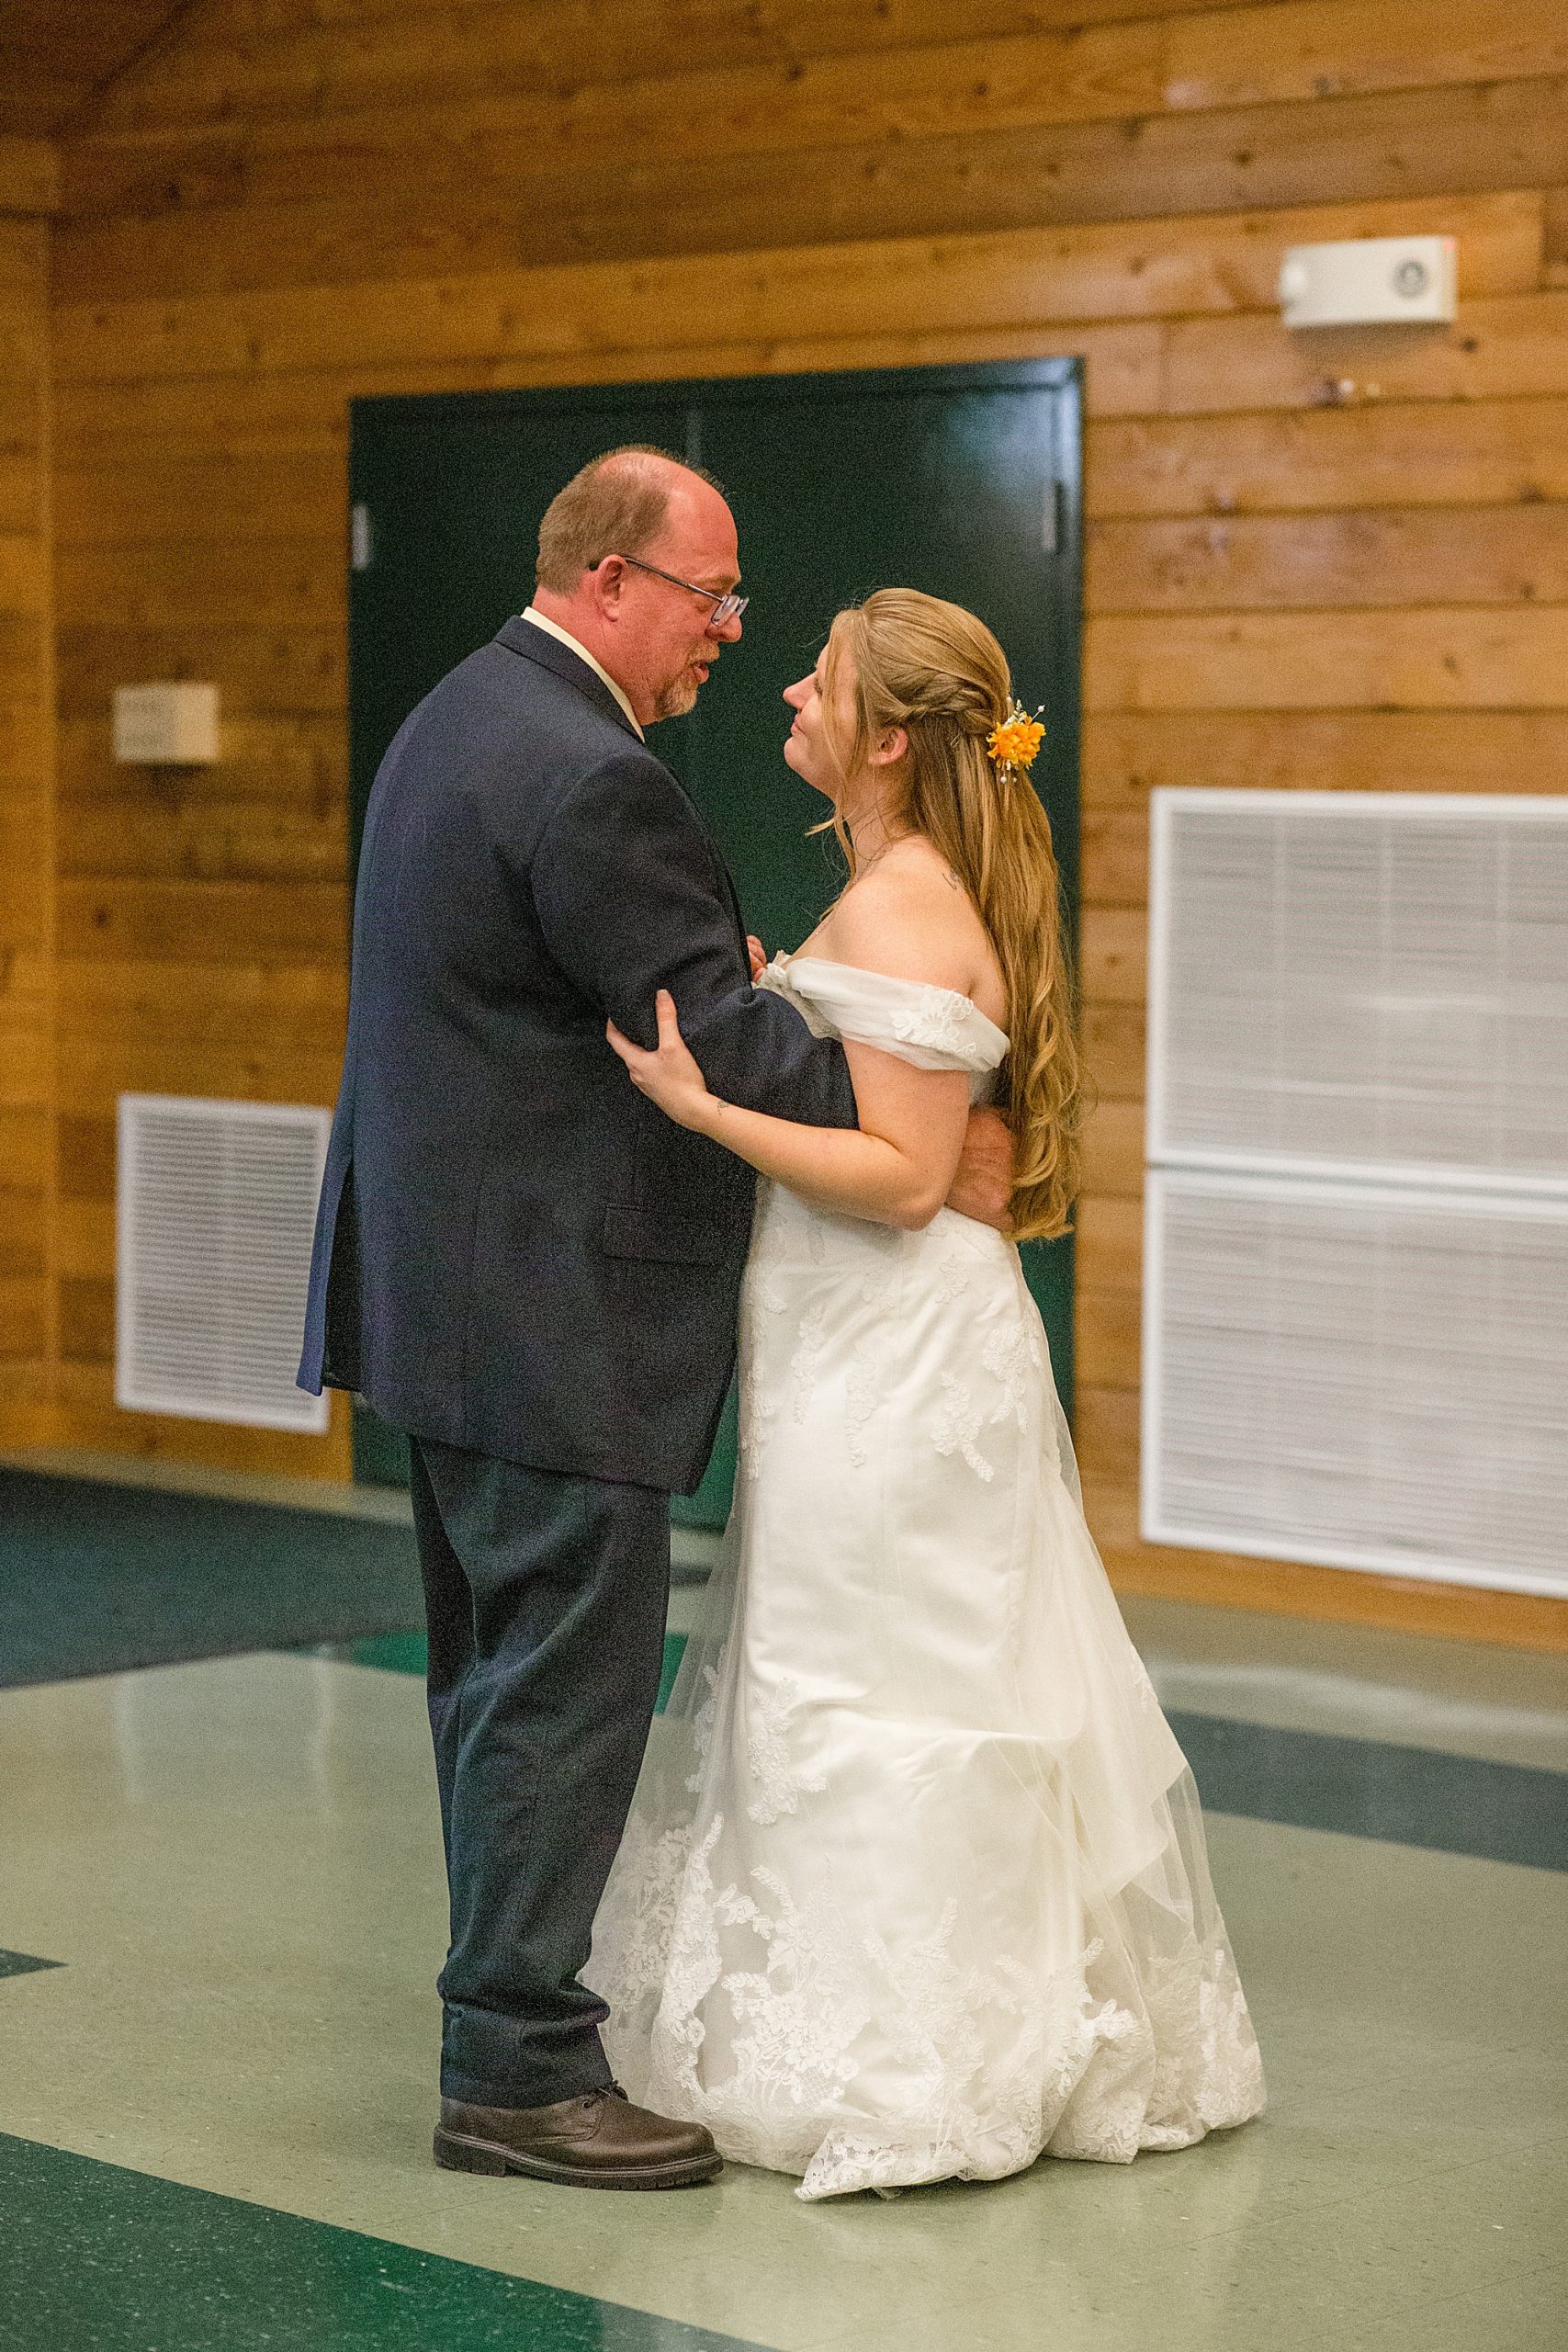 dad dances with bride during MO wedding reception